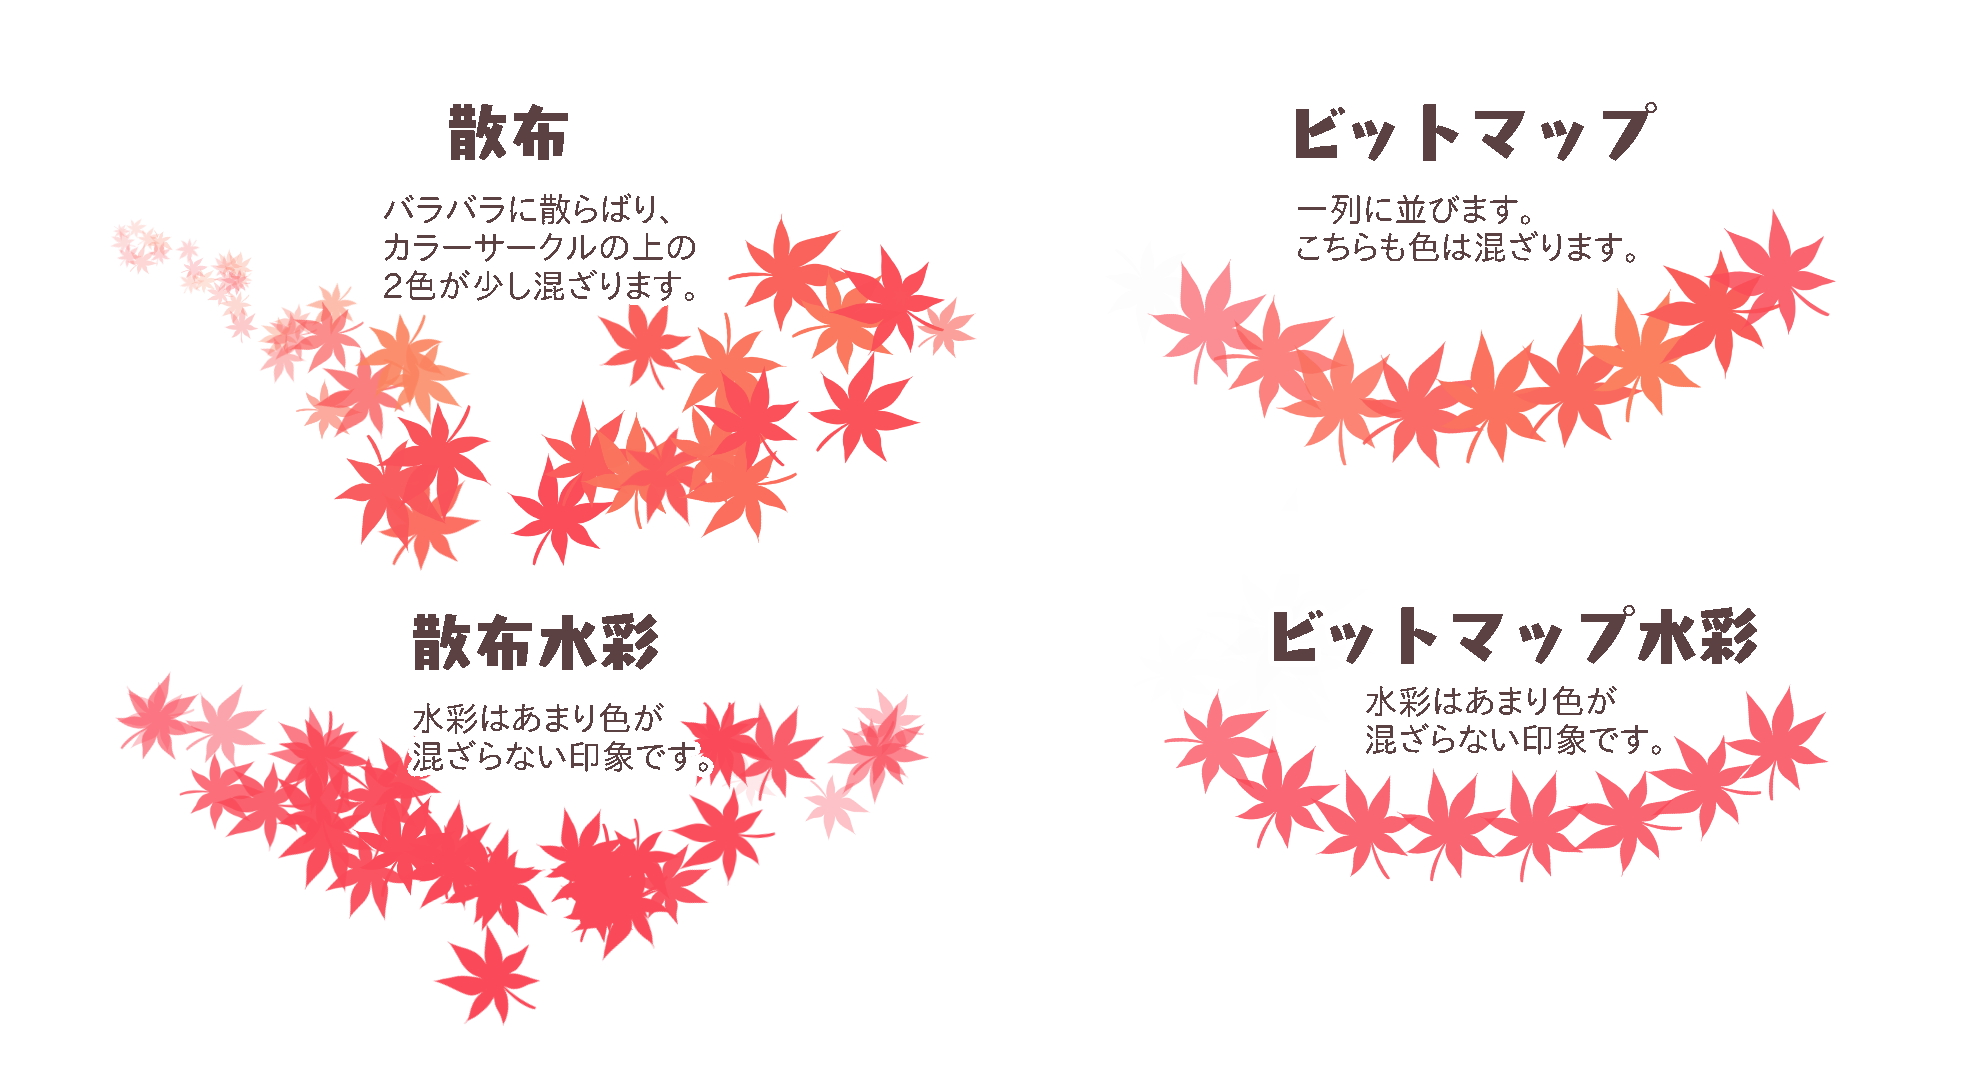 紅葉ブラシで簡単 秋のイラストメイキング Medibang Paint 無料のイラスト マンガ制作ツール